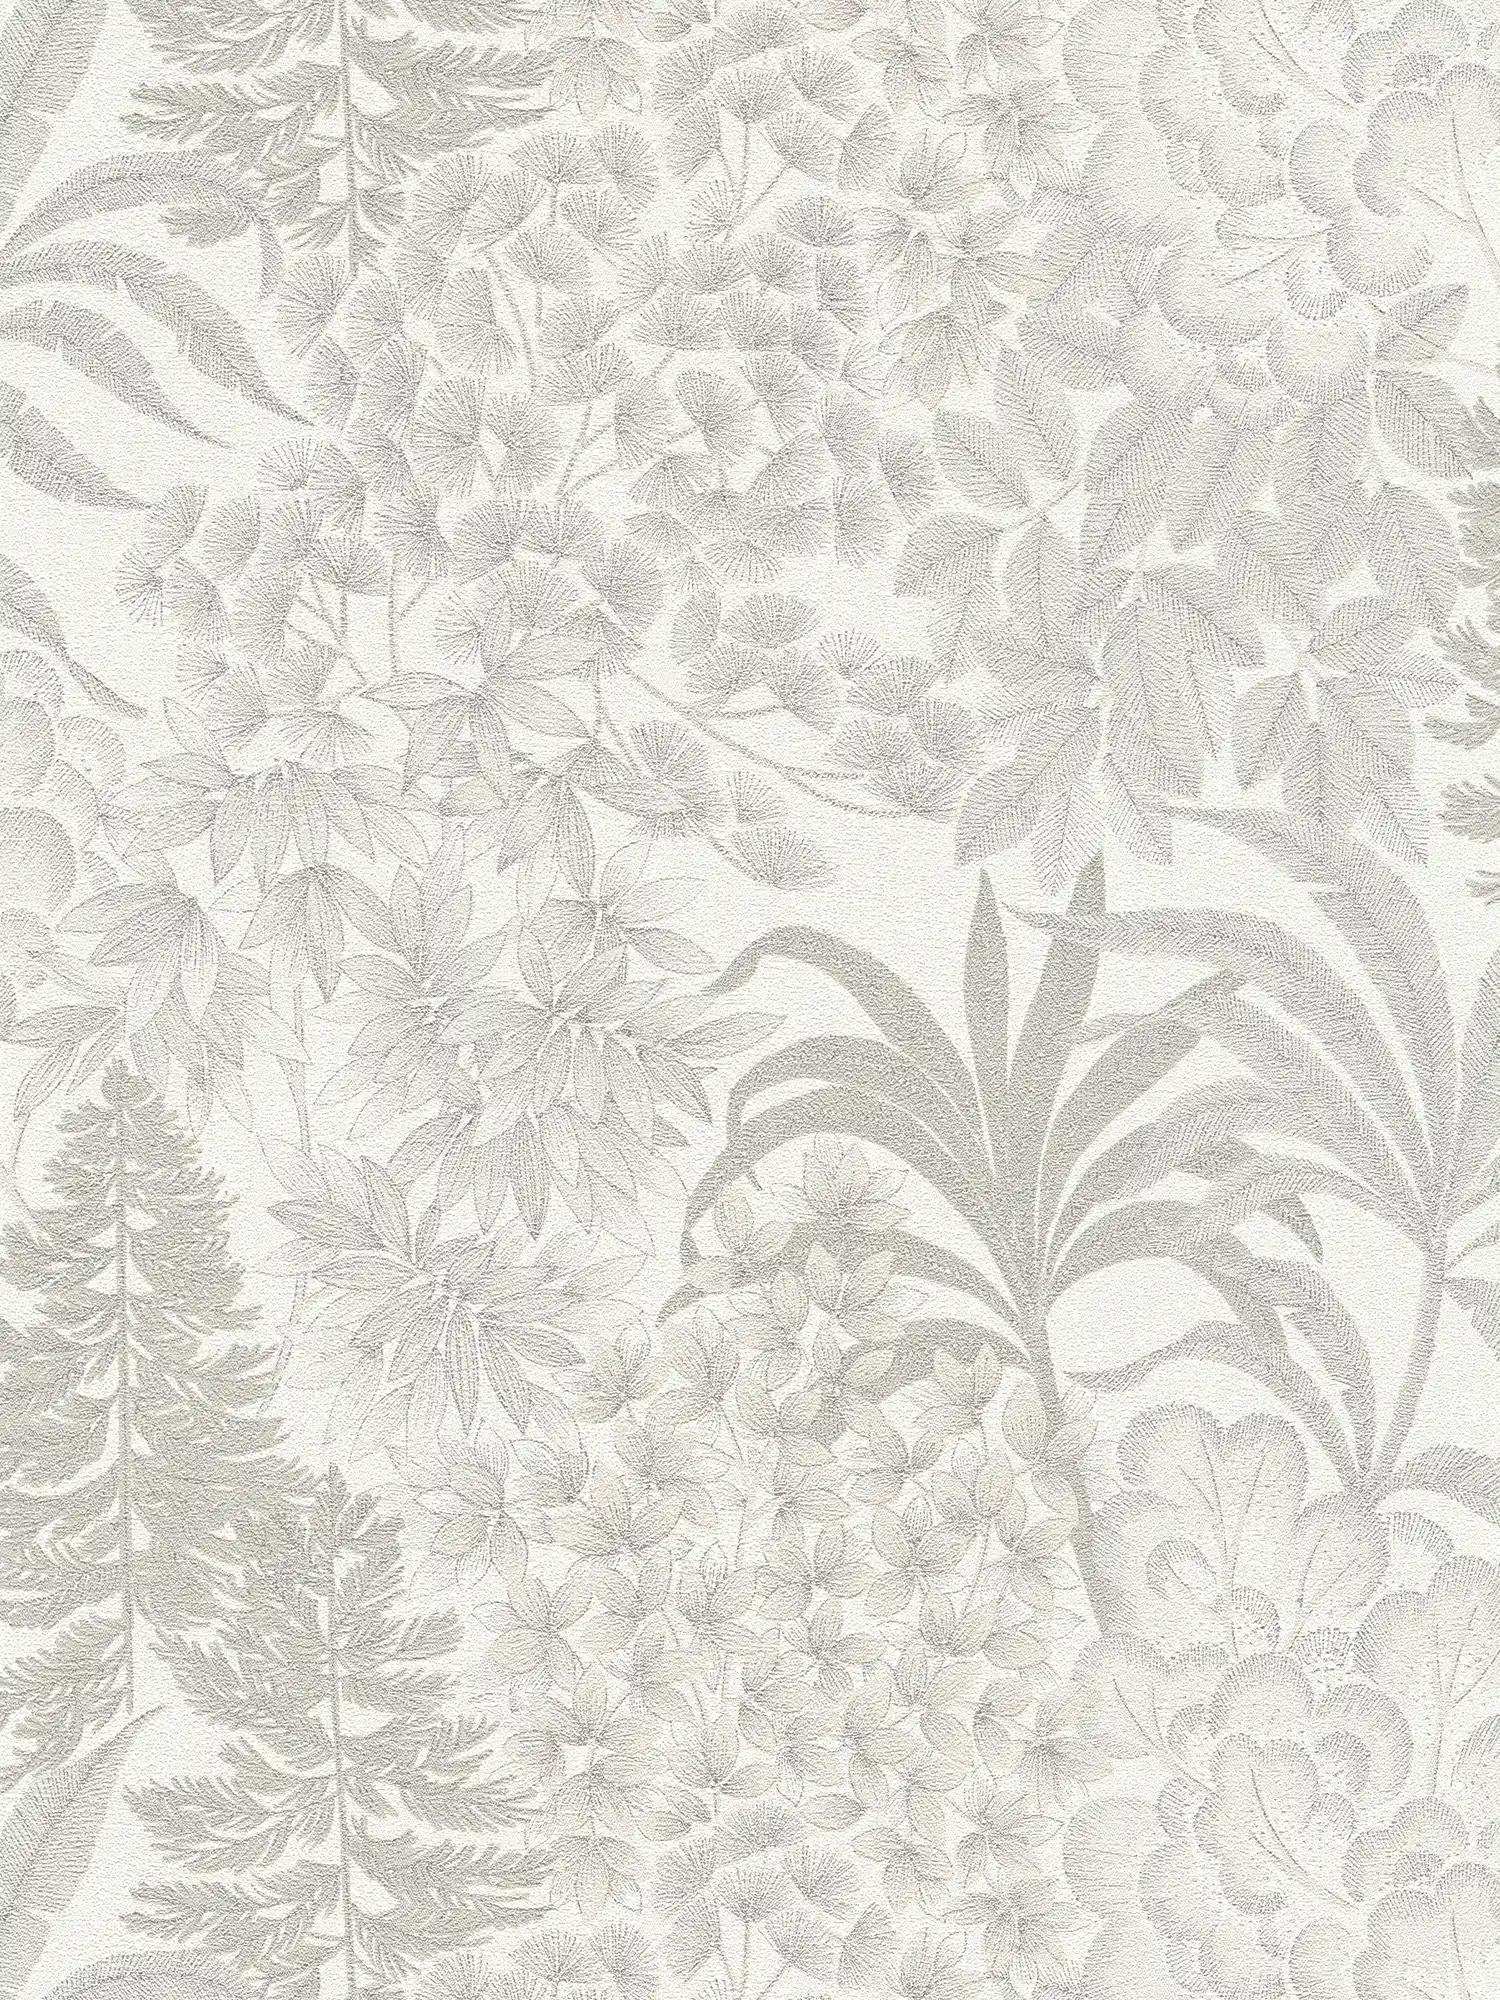 Carta da parati floreale leggermente lucida in un colore tenue - bianco, grigio, argento
